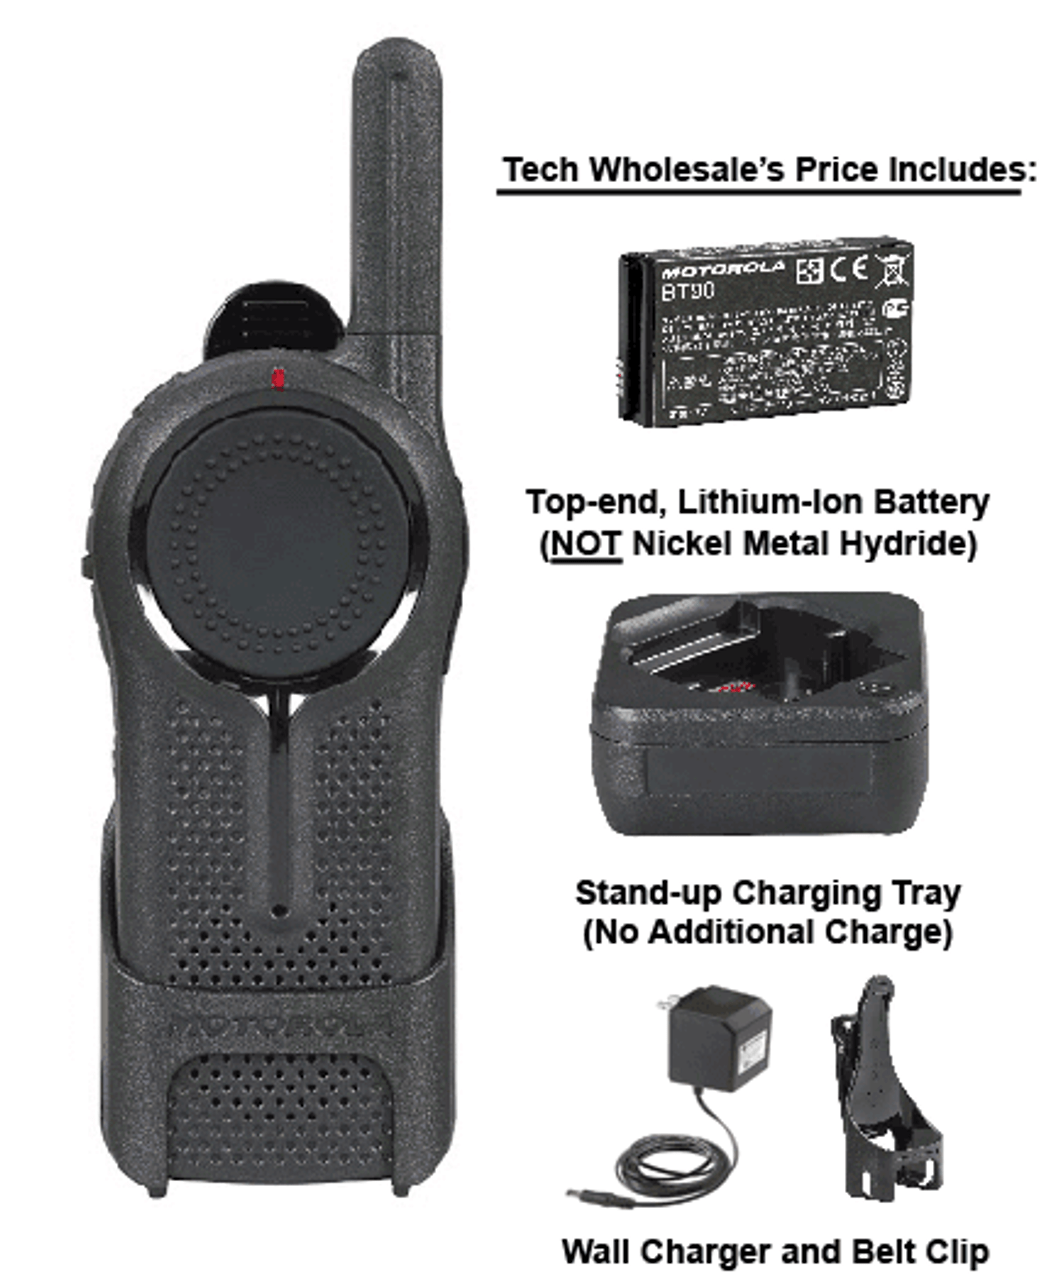 Motorola DLR1060 Walkie Talkie Tech Wholesale